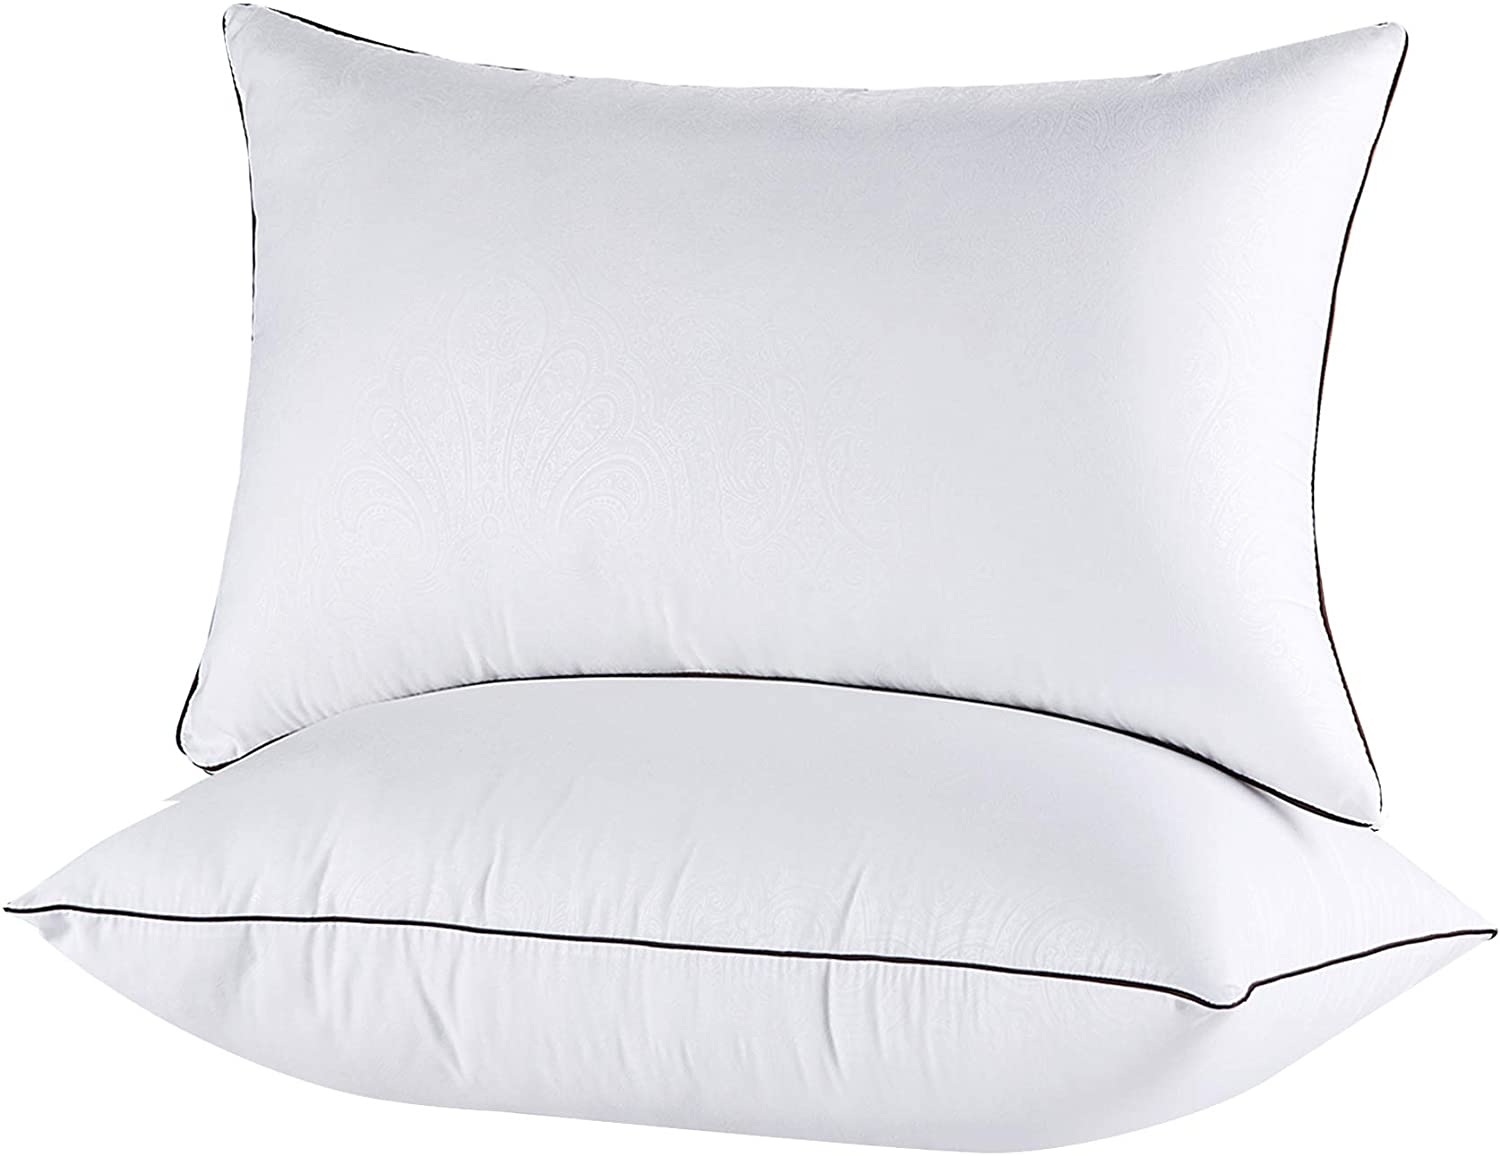 JOLLYVOGUE Down Alternative Standard Pillows, 2-Pack